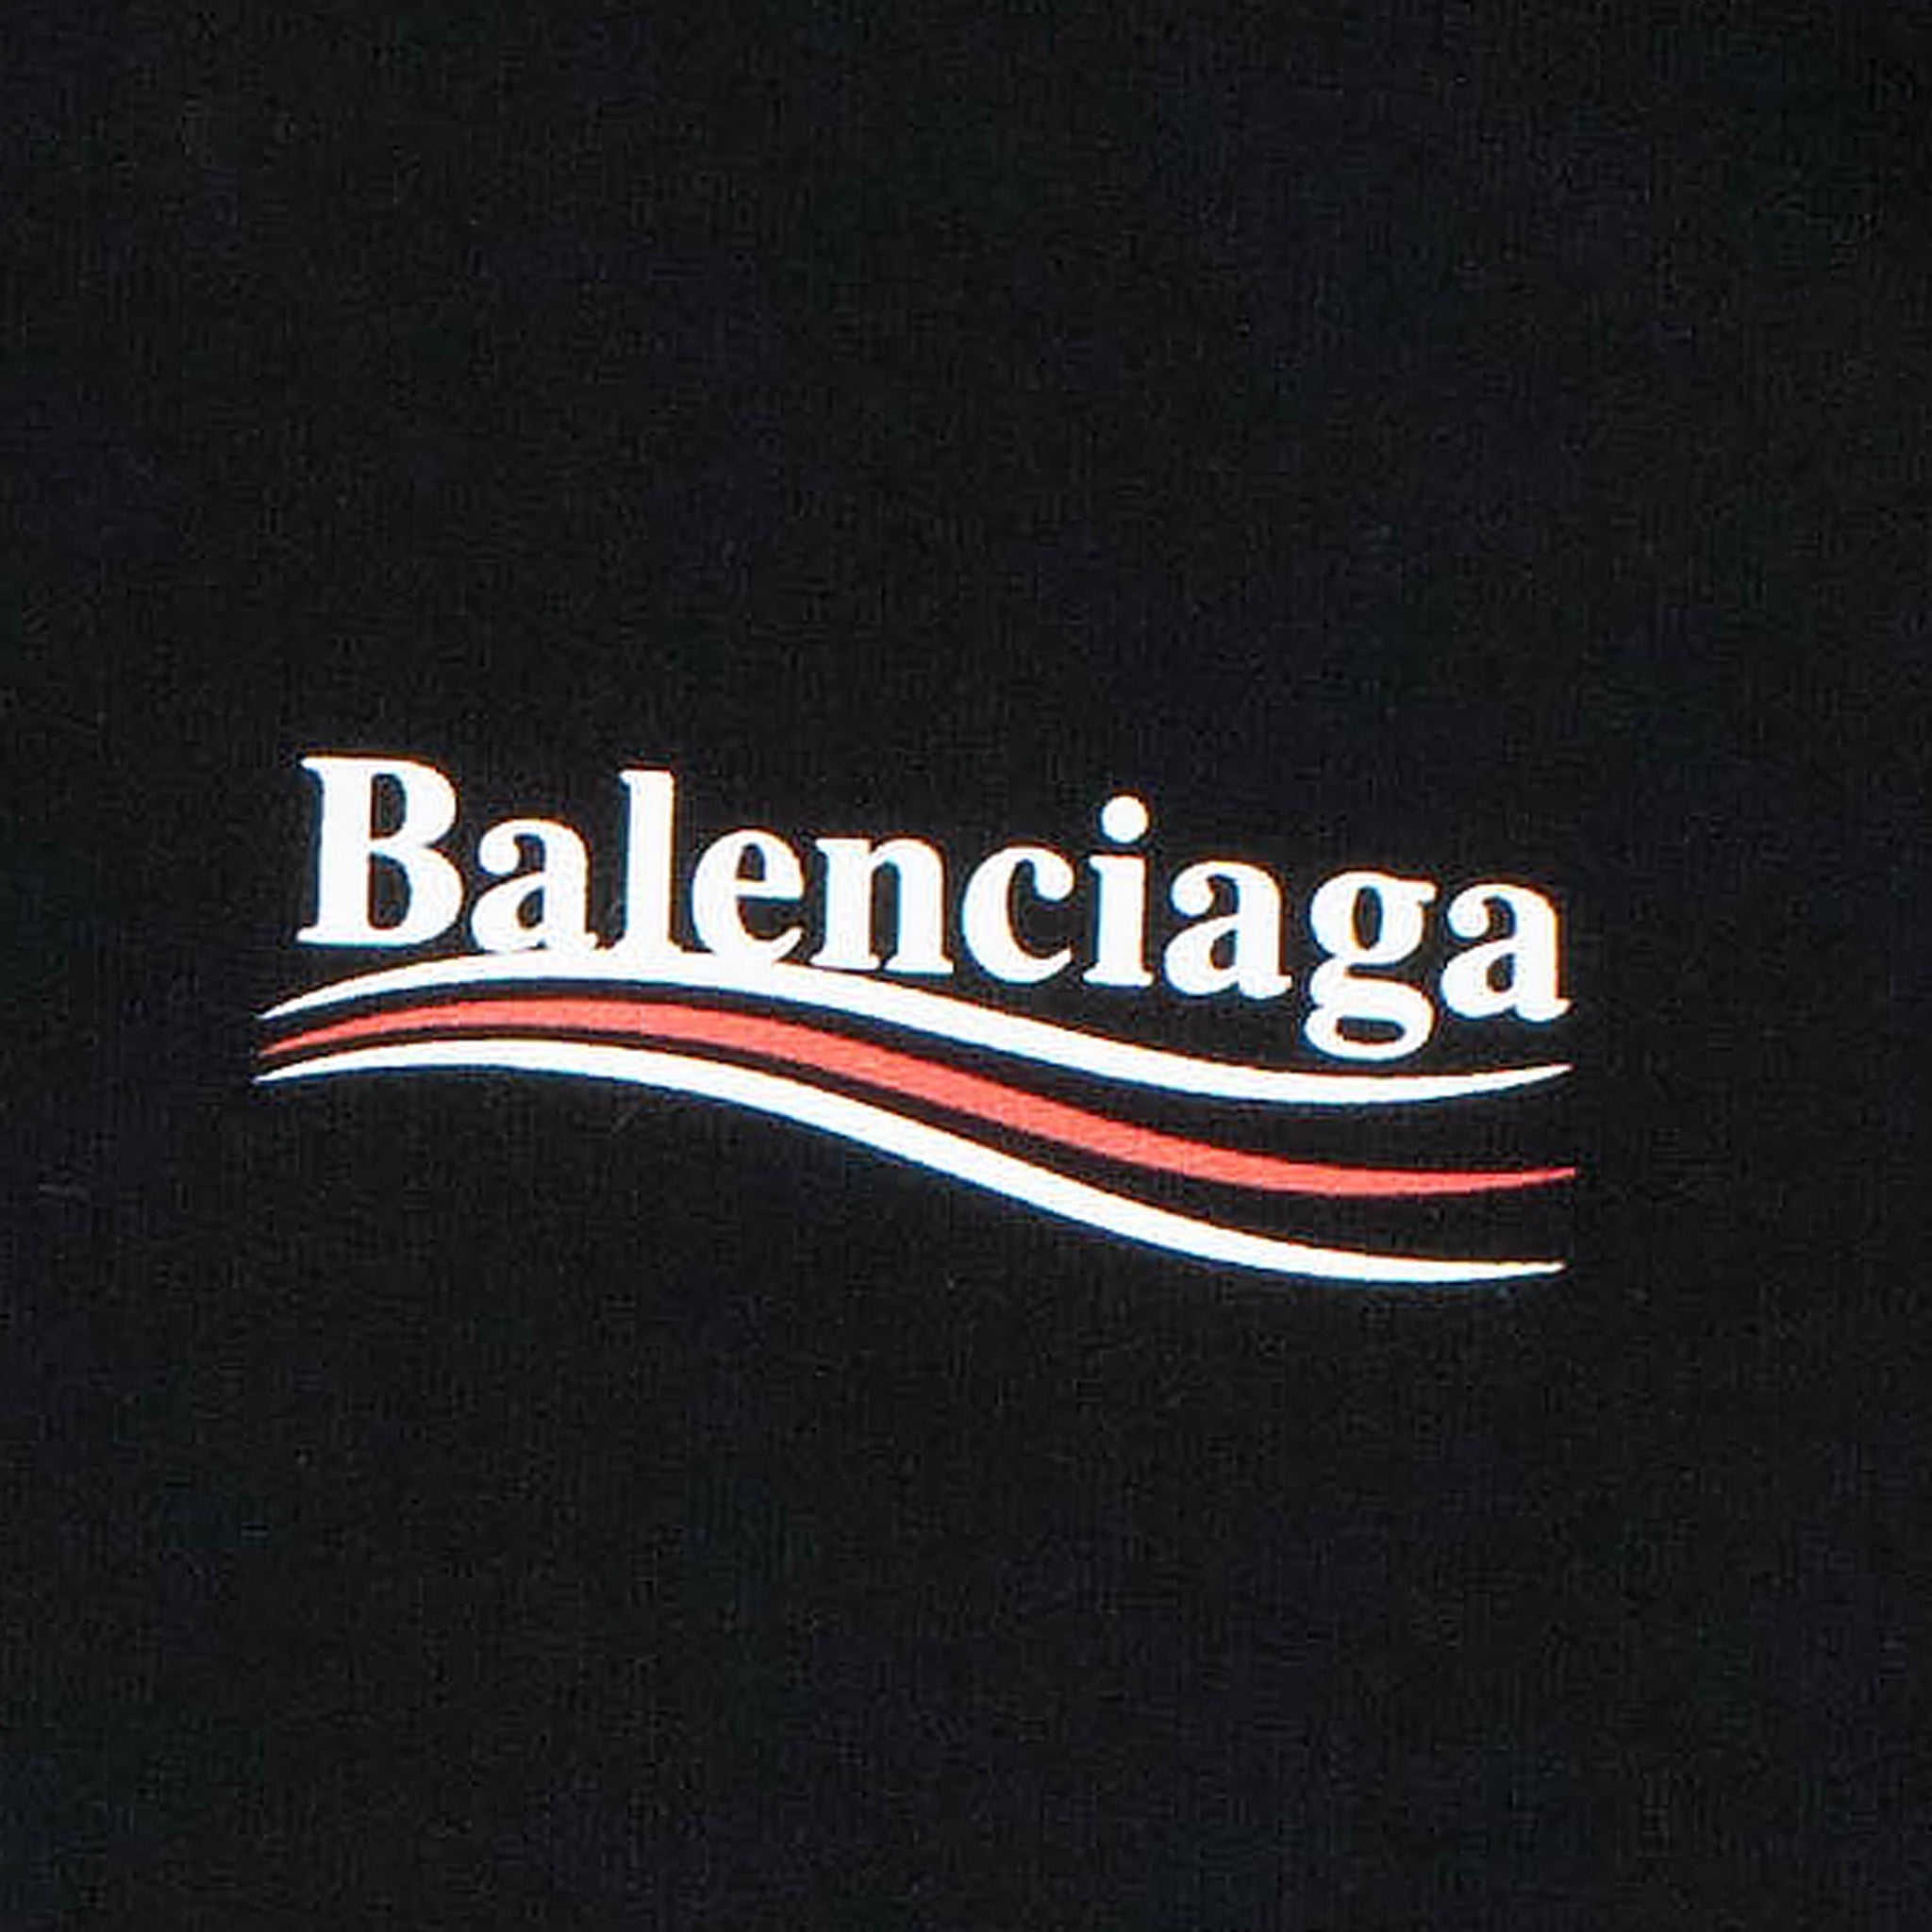 Balenciaga BB Outline SVG Download Balenciaga Logo Vector File Balenciaga  Brand Logo png file Balenciaga BB Outline SVG sil  Fashion logo  branding Svg  logo